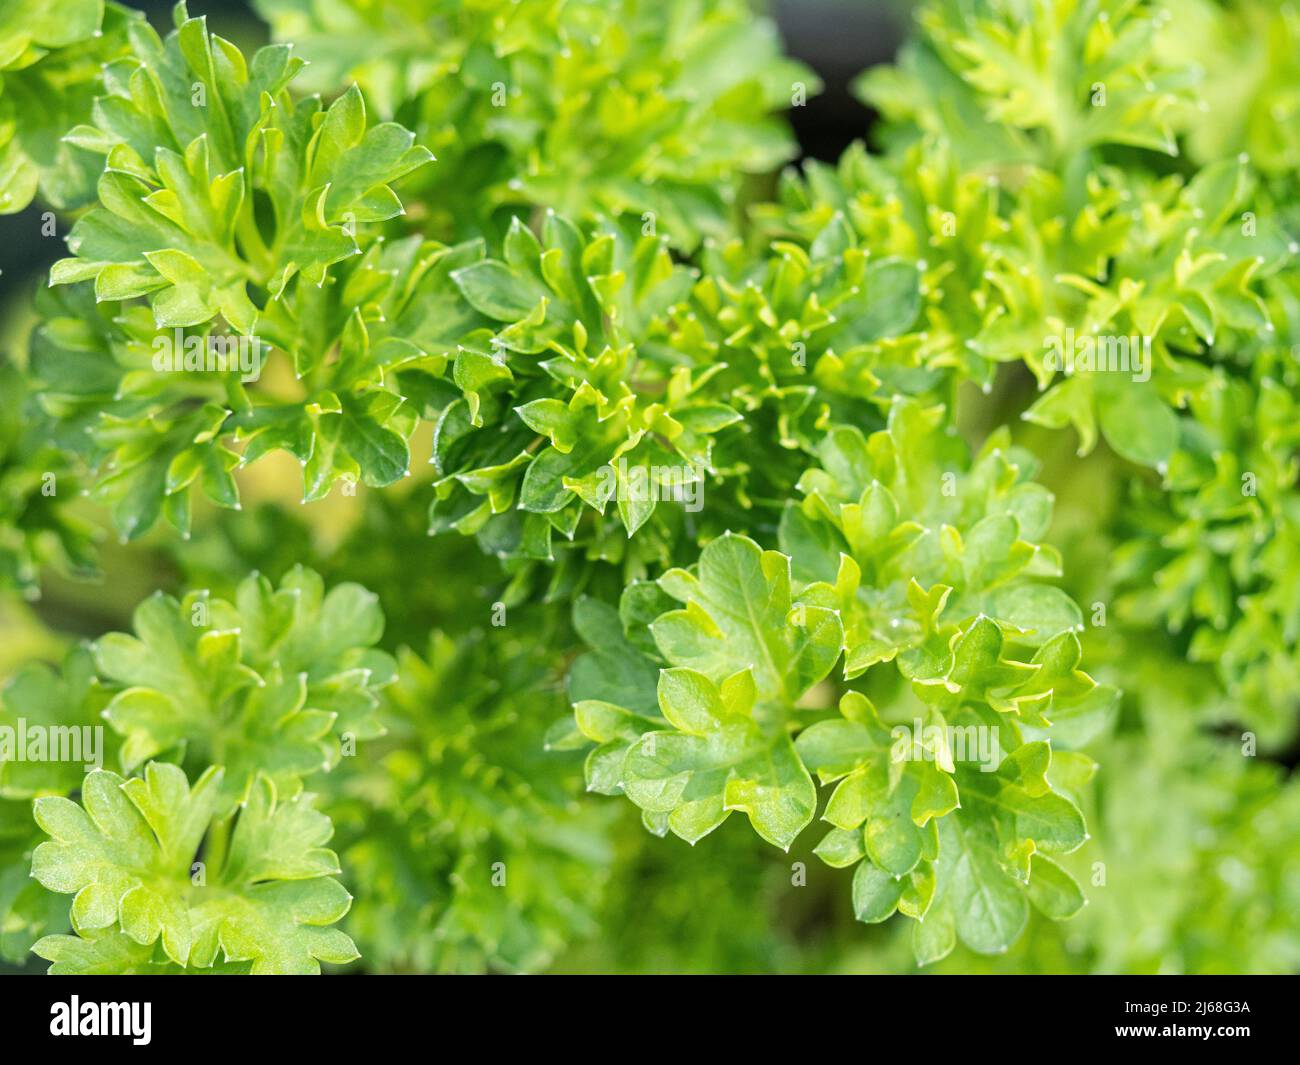 Un primo piano delle foglie ricciolate verdi e brillanti del prezzemolo riccio dell'erba Foto Stock